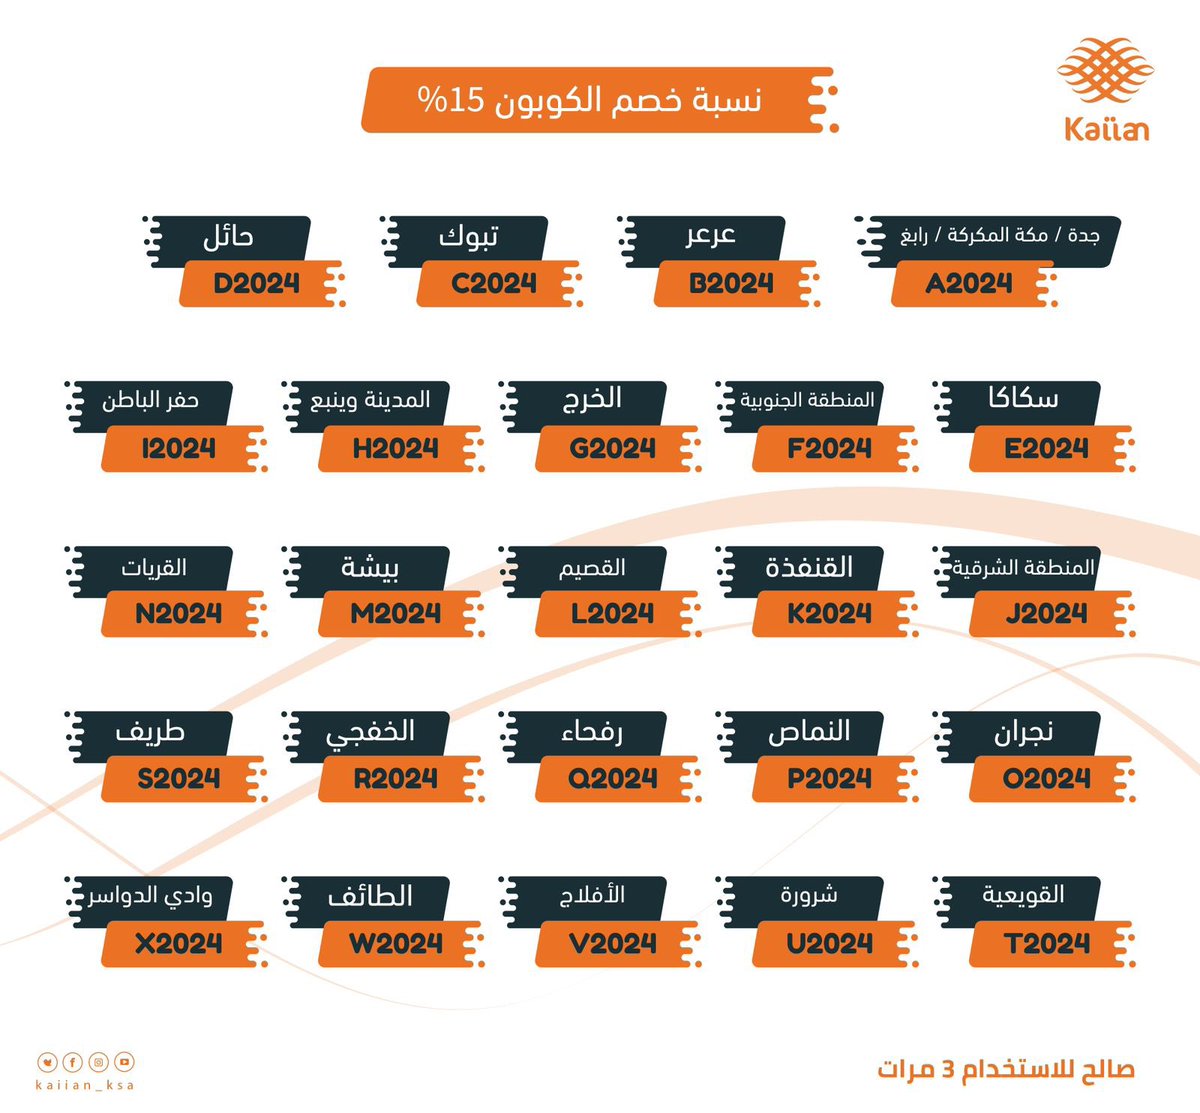 تطبيق كيان لخدمات النقل والمواصلات @kaiian_KSA يوديك لكل مكان في المملكة، استخدم كود الخصم لثلاث رحلات قادمة! وخصوصًا لأهل الرياض تفضلوا هالكود🤩 RUH01 #ad